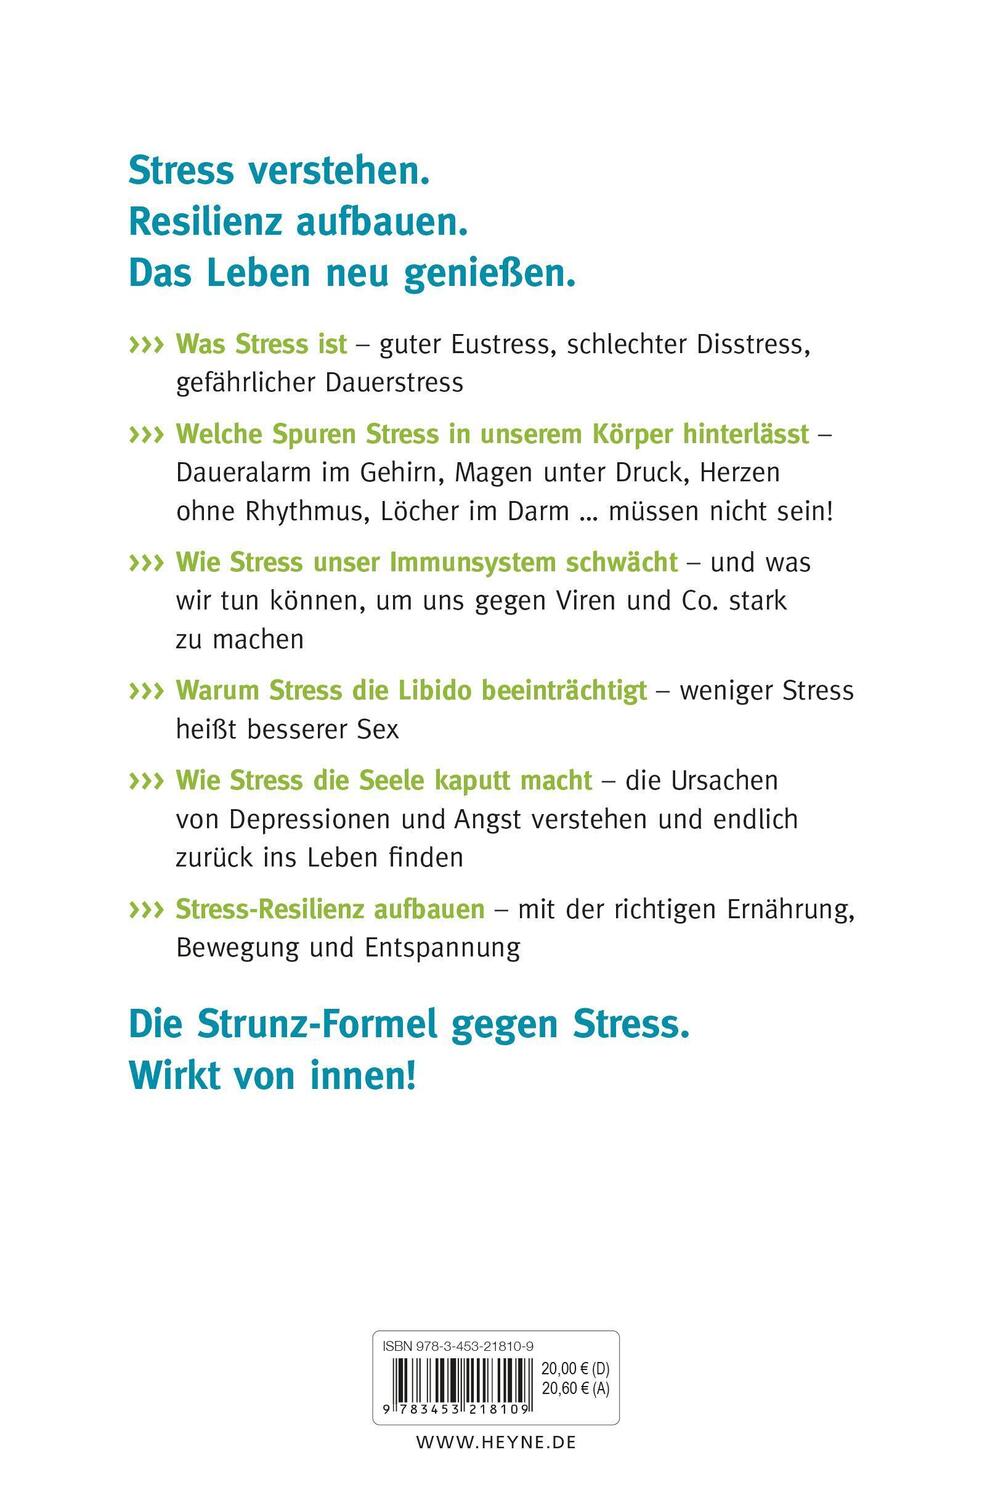 Bild: 9783453218109 | Das Stress-weg-Buch - Das Geheimnis der Resilienz | Ulrich Strunz